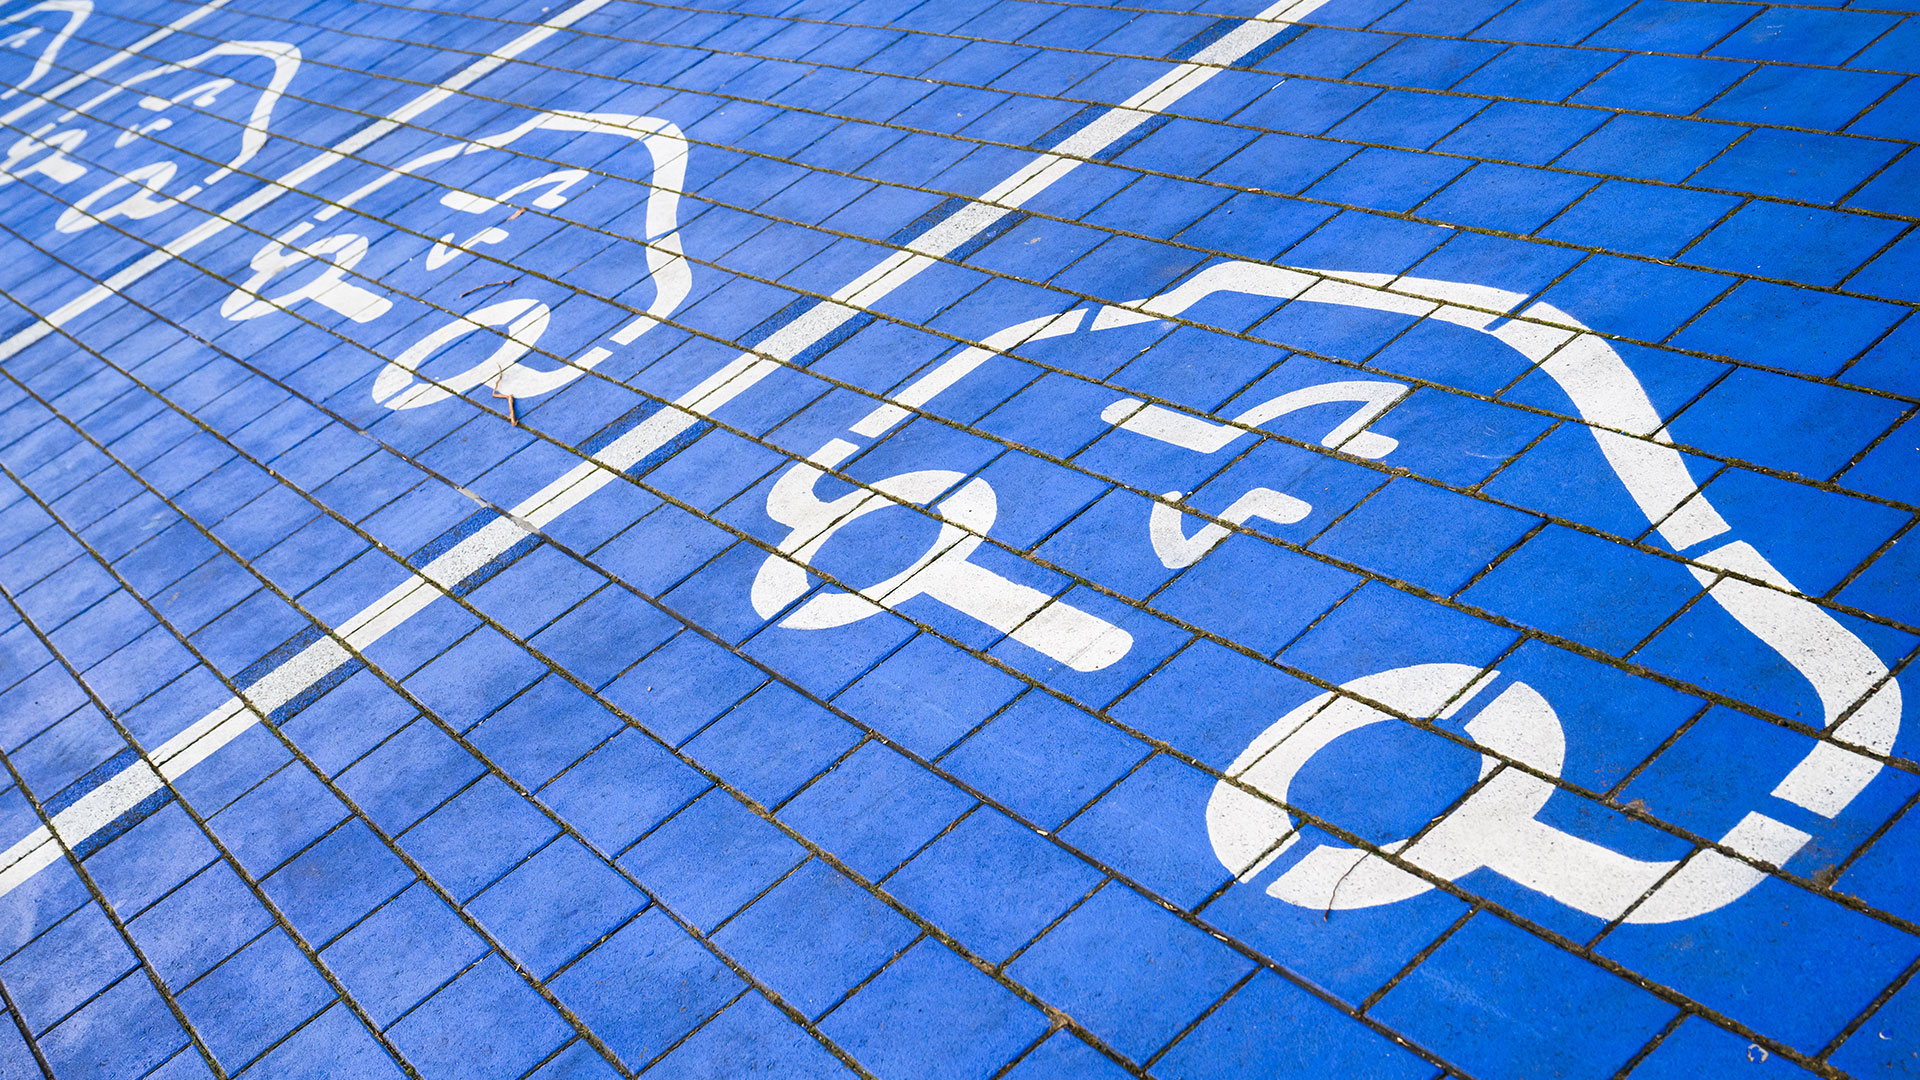 Symbole markieren Ladeplätze an Schnellladesäulen für Elektroautos 